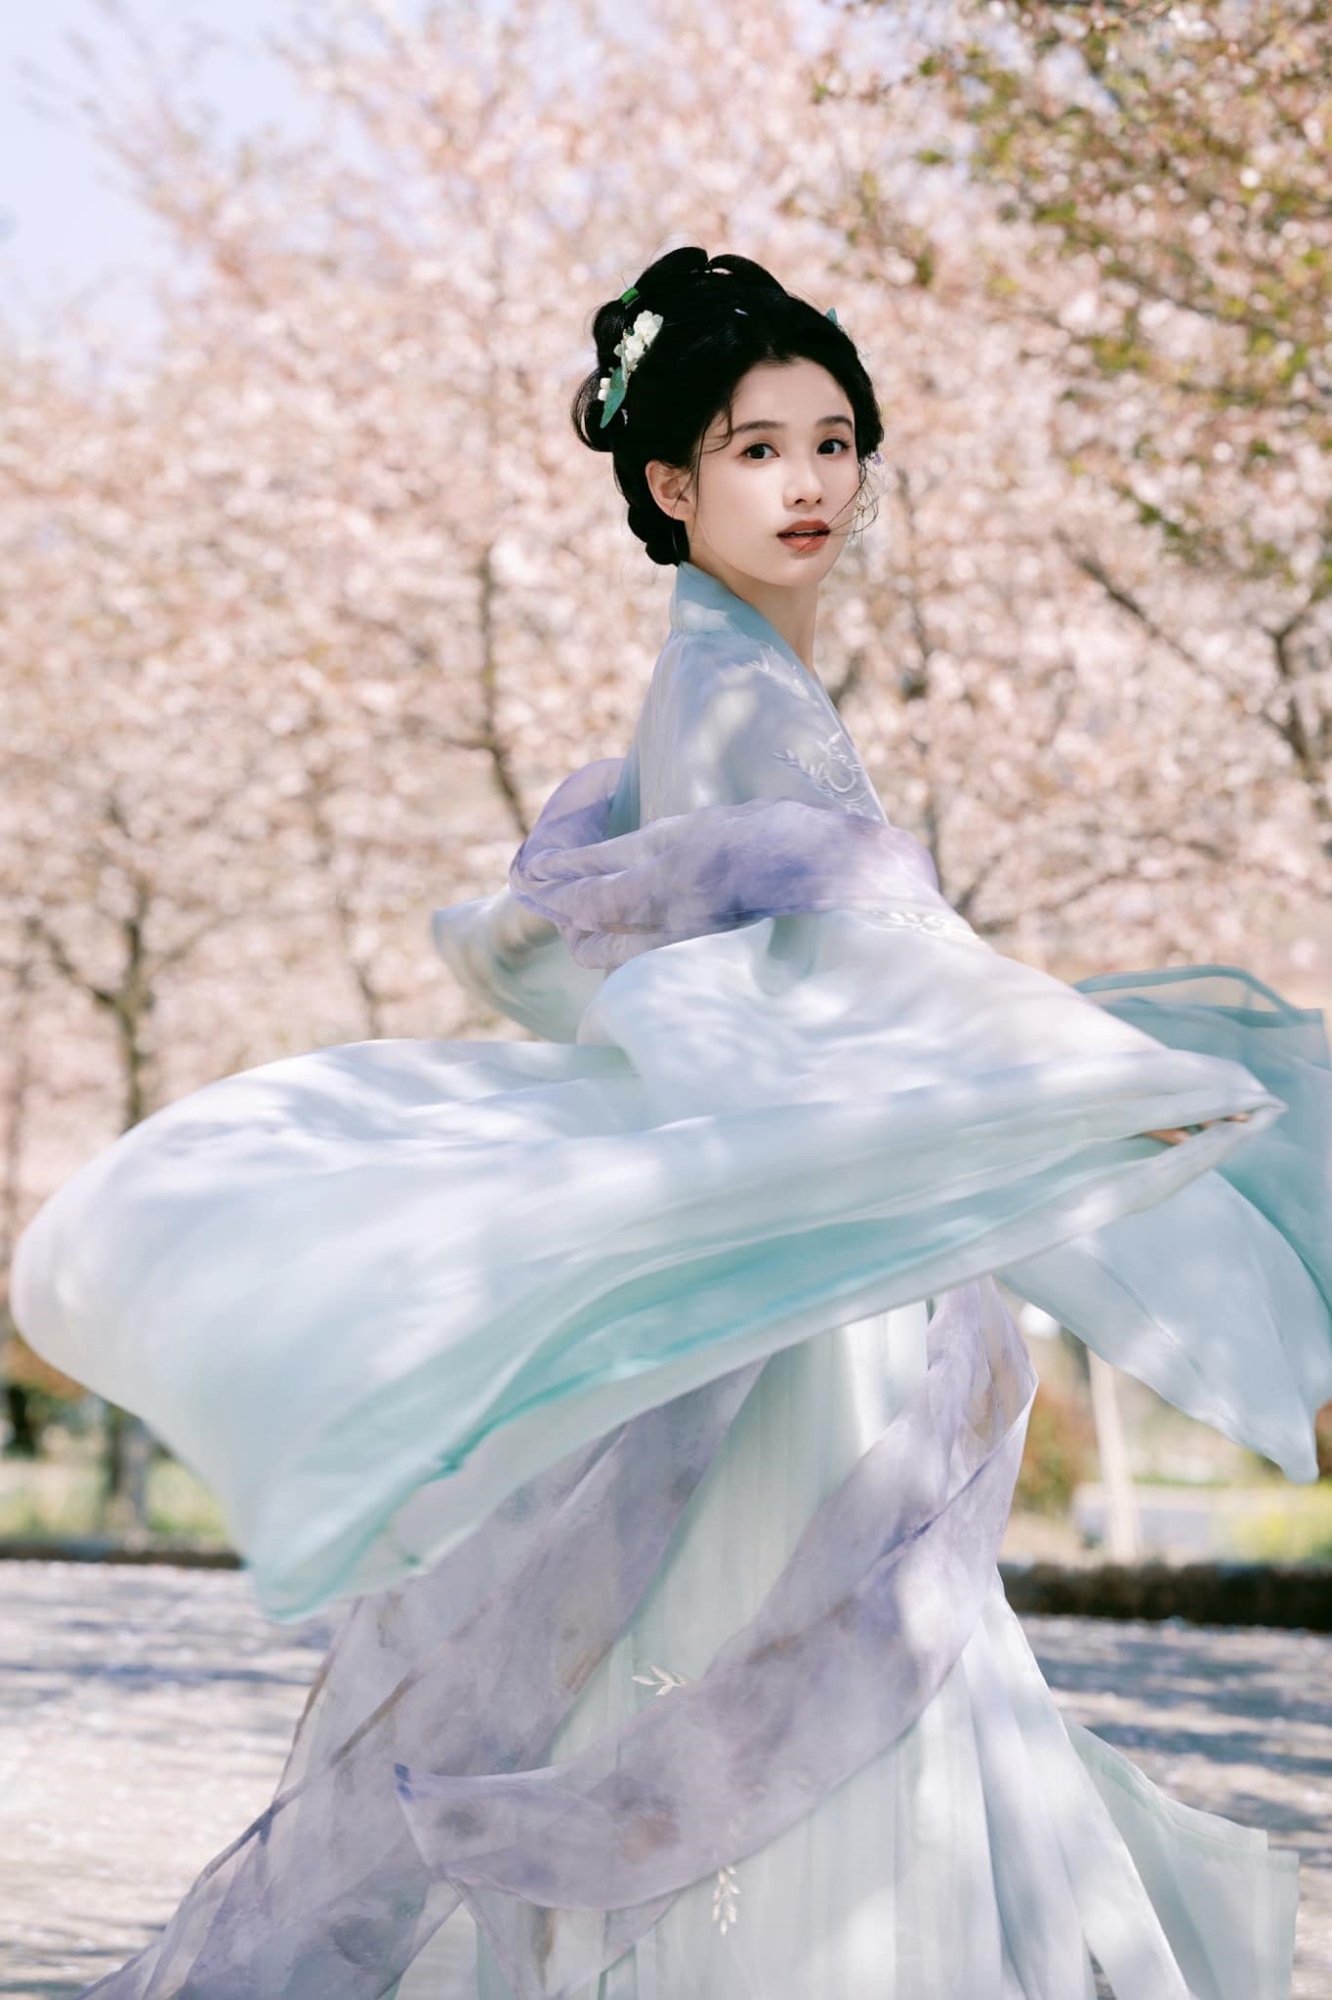 'Con gái cưng của Châu Tấn' Trương Tịnh Nghi 'gây bão' với bộ ảnh mỹ nhân cổ trang  - Ảnh 6